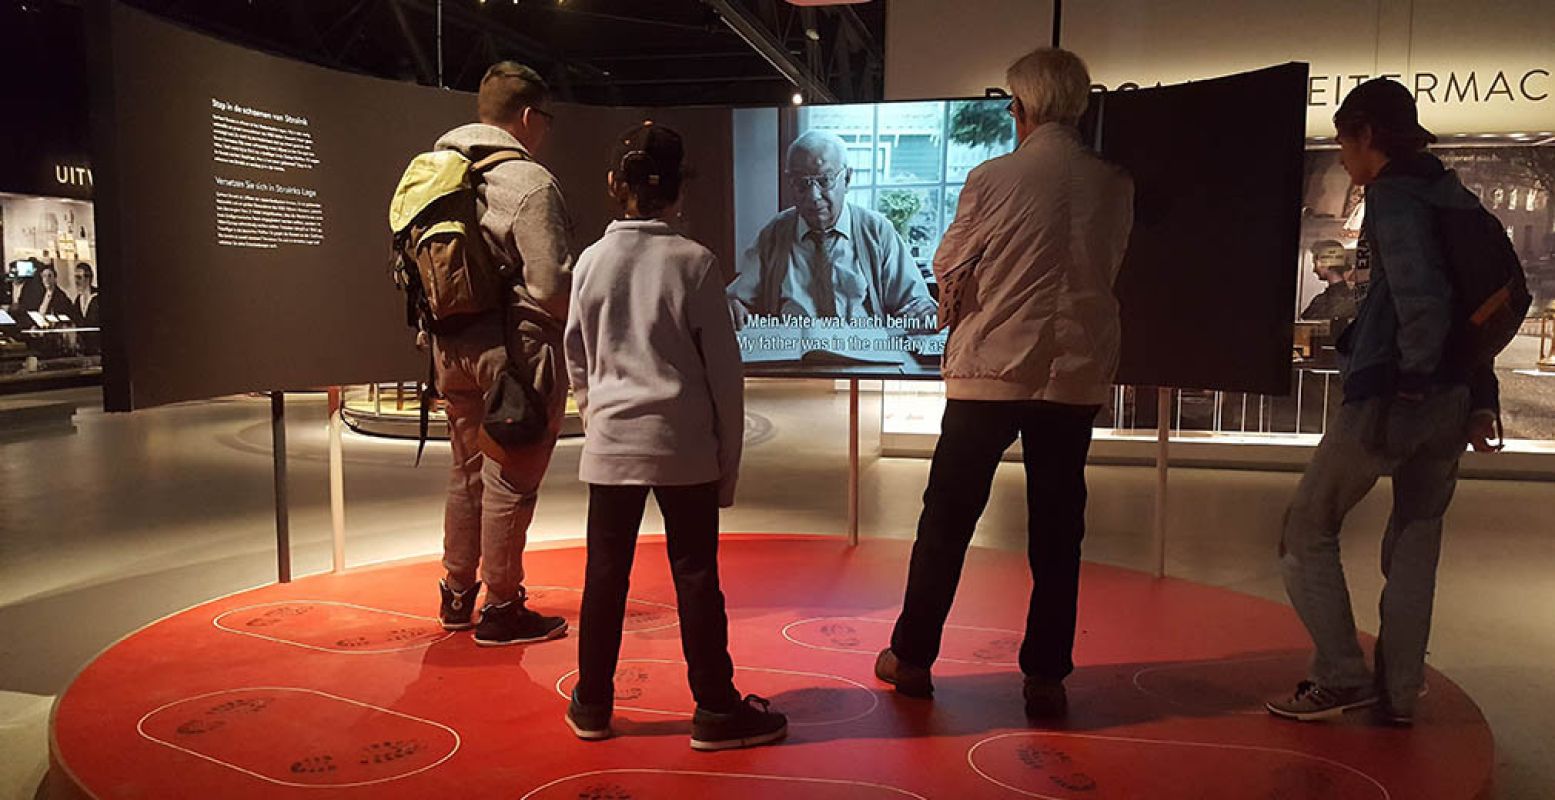 Wat zou jij doen in de Tweede Wereldoorlog? Ontdek het in de interactieve tentoonstelling in het oorlogsmuseum. Foto: Oorlogsmuseum Overloon.